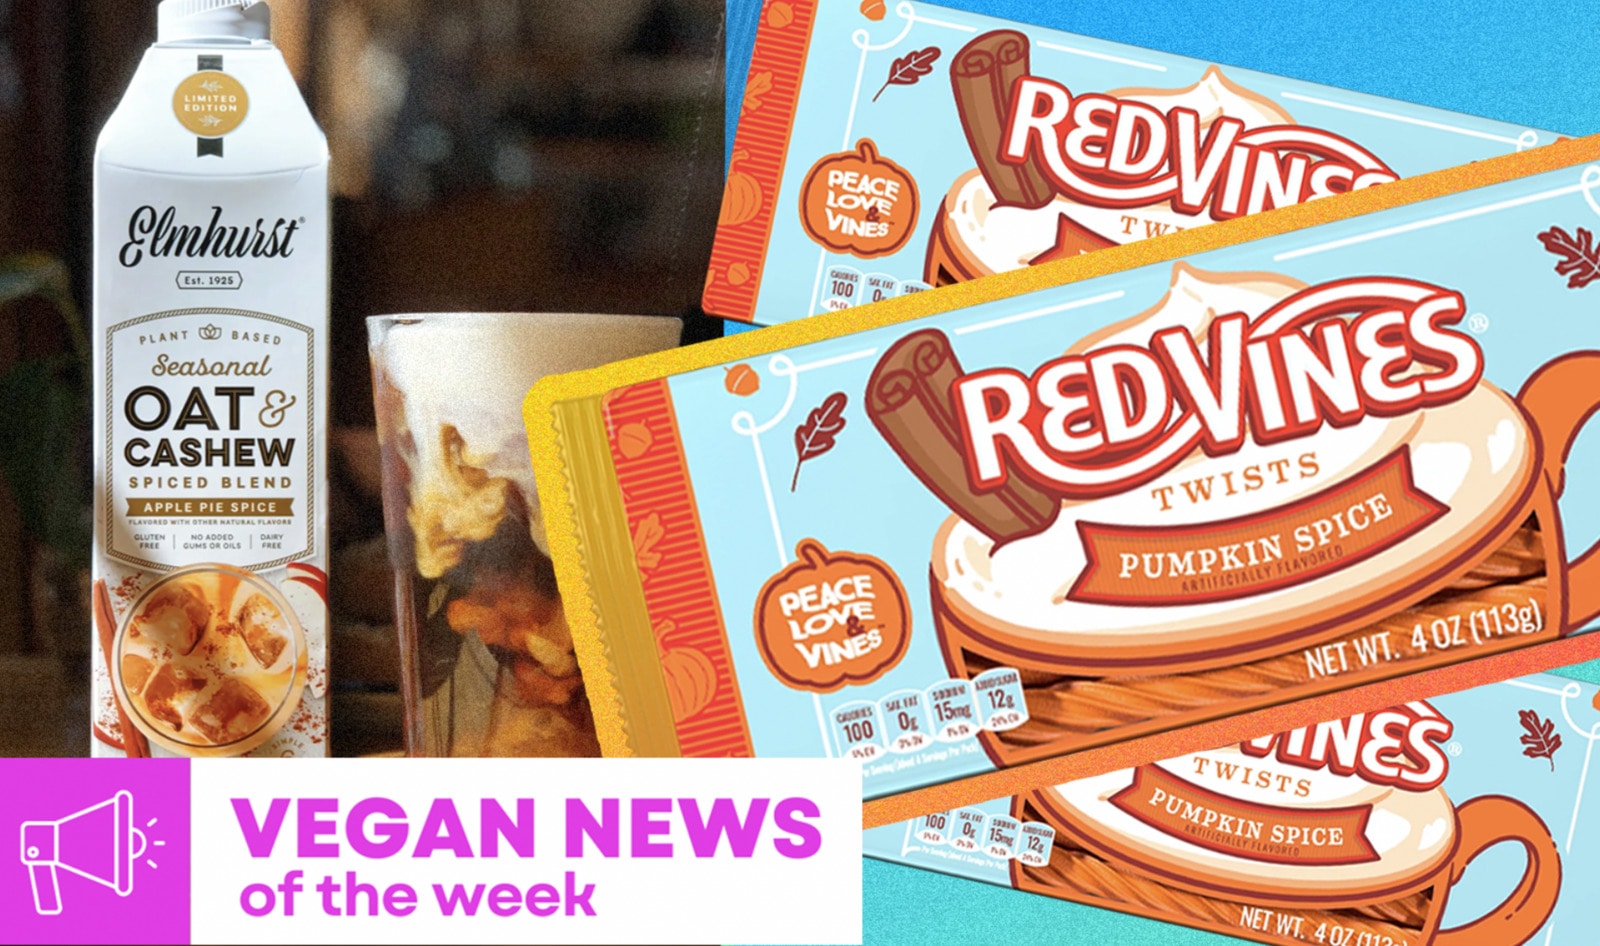 Vegan Food News of the Week: Pumpkin Spice Red Vines, Apple Pie Milk, and More&nbsp;